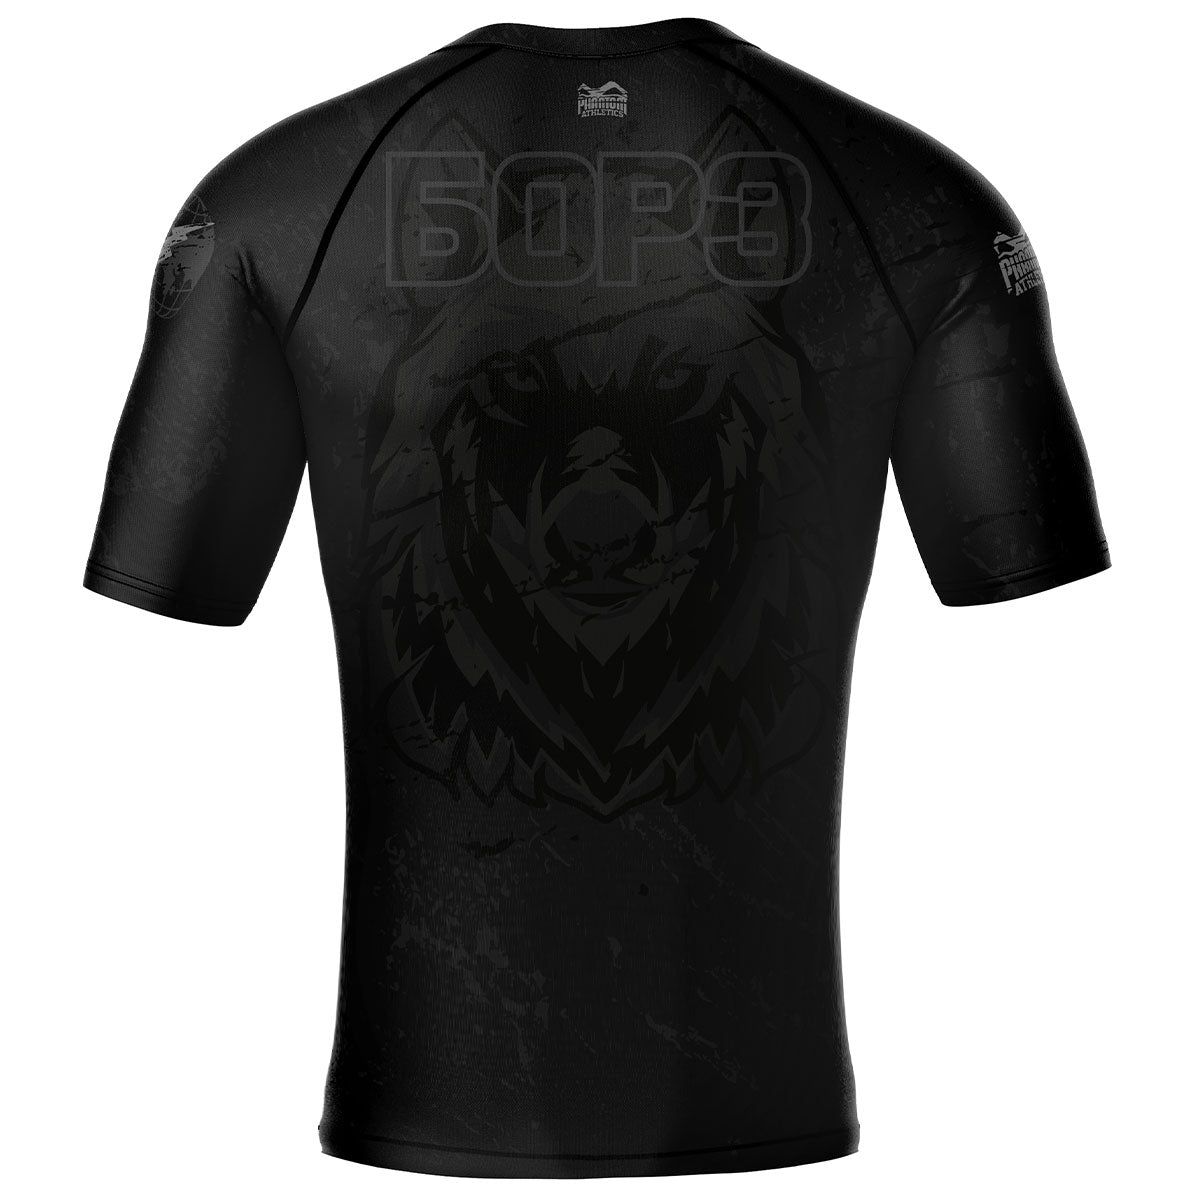 Phantom BORZ БОРЗ Rashguard. Das ideale Compression Shirt für deinen Kampfsport. Im Tschetschenien Wolf Design mit russischem WOLF Schriftzug. Perfekt für MMA, Muay Thai, Kickboxen, Ringen und Grappling.